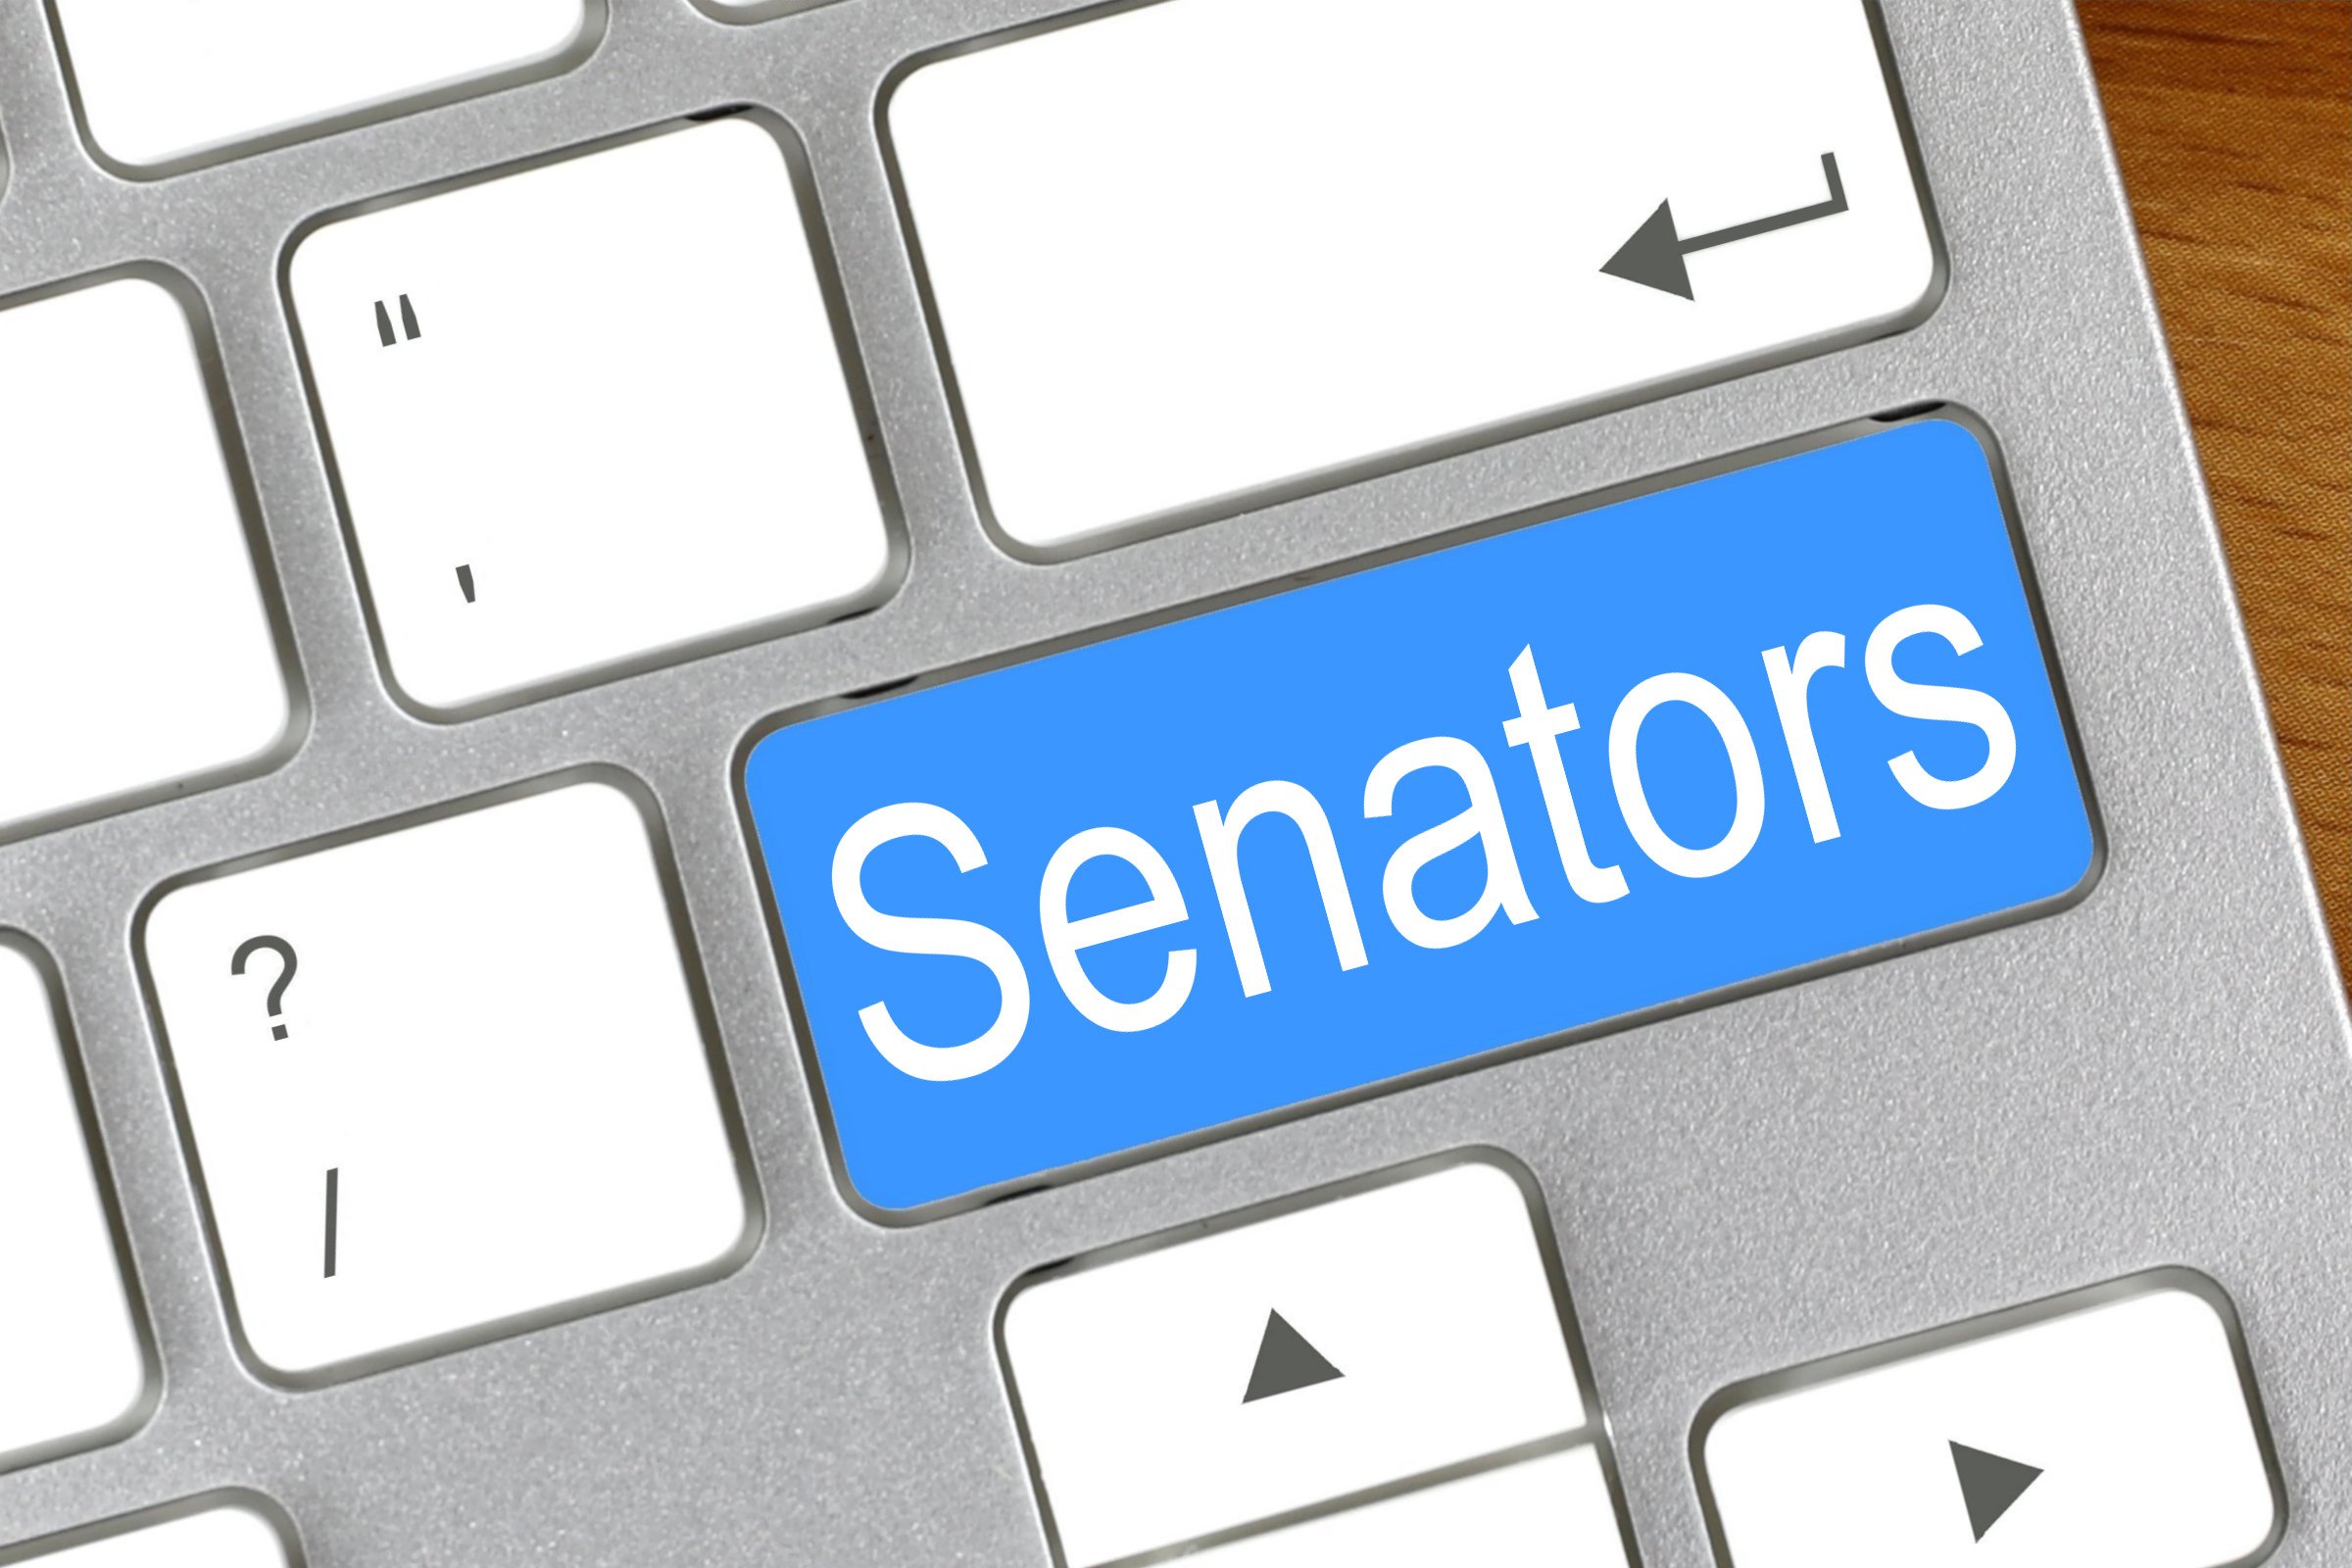 senators